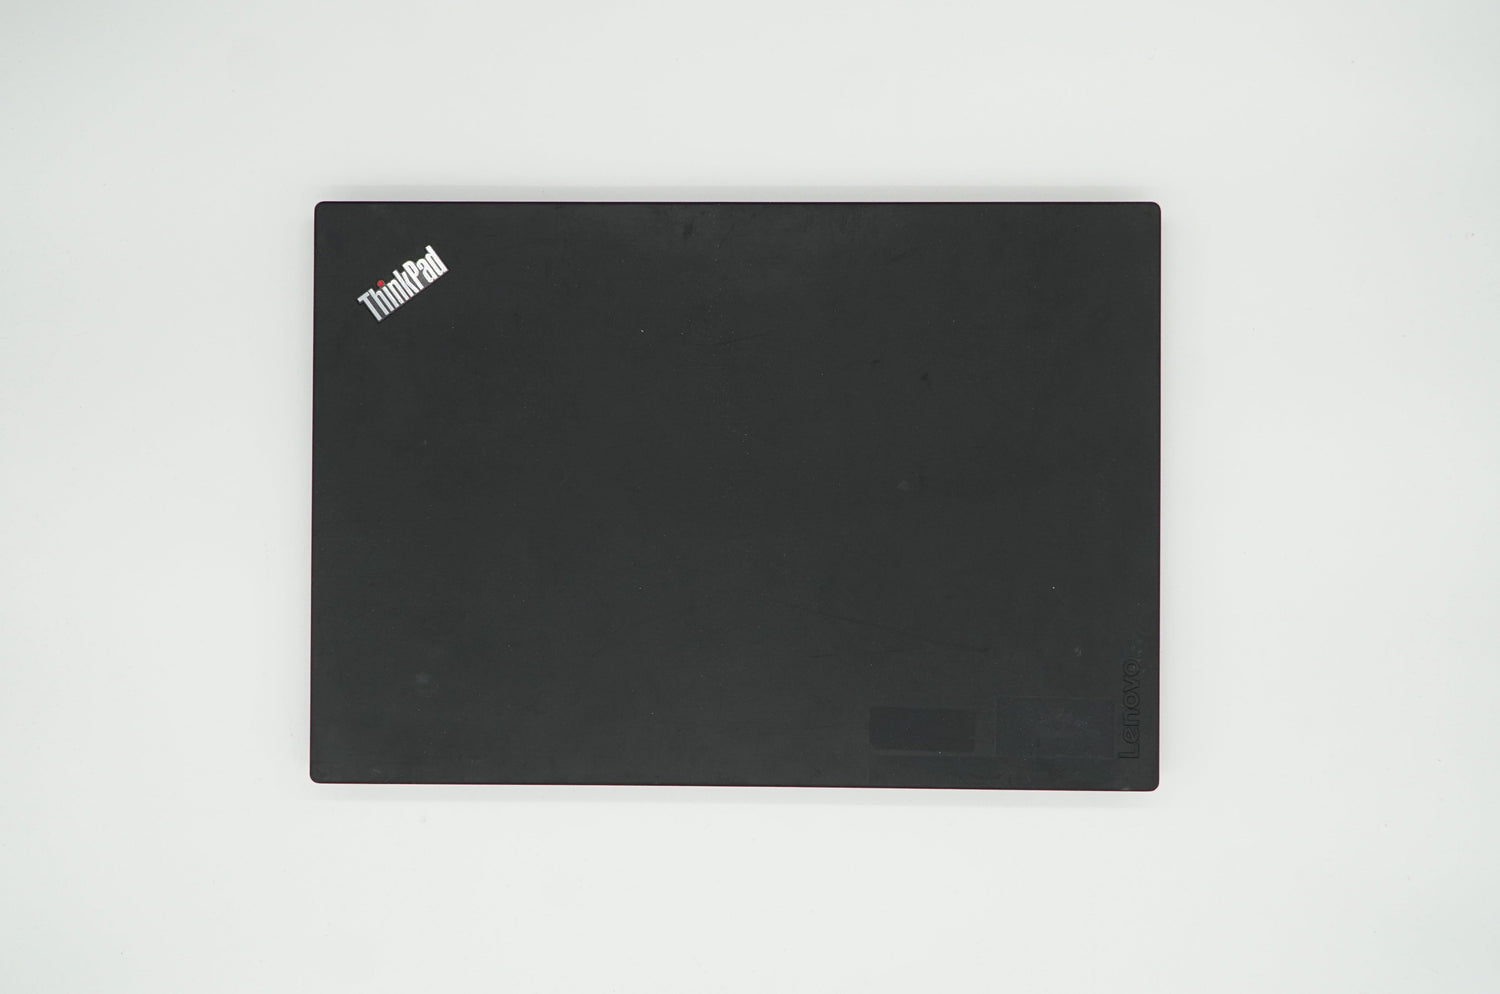 LENOVO ThinkPad T570 Intel i5-6300U 16GB DDR4 15,6&quot; FHD IPS 240GB SSD Laptops Notebook-Pro 